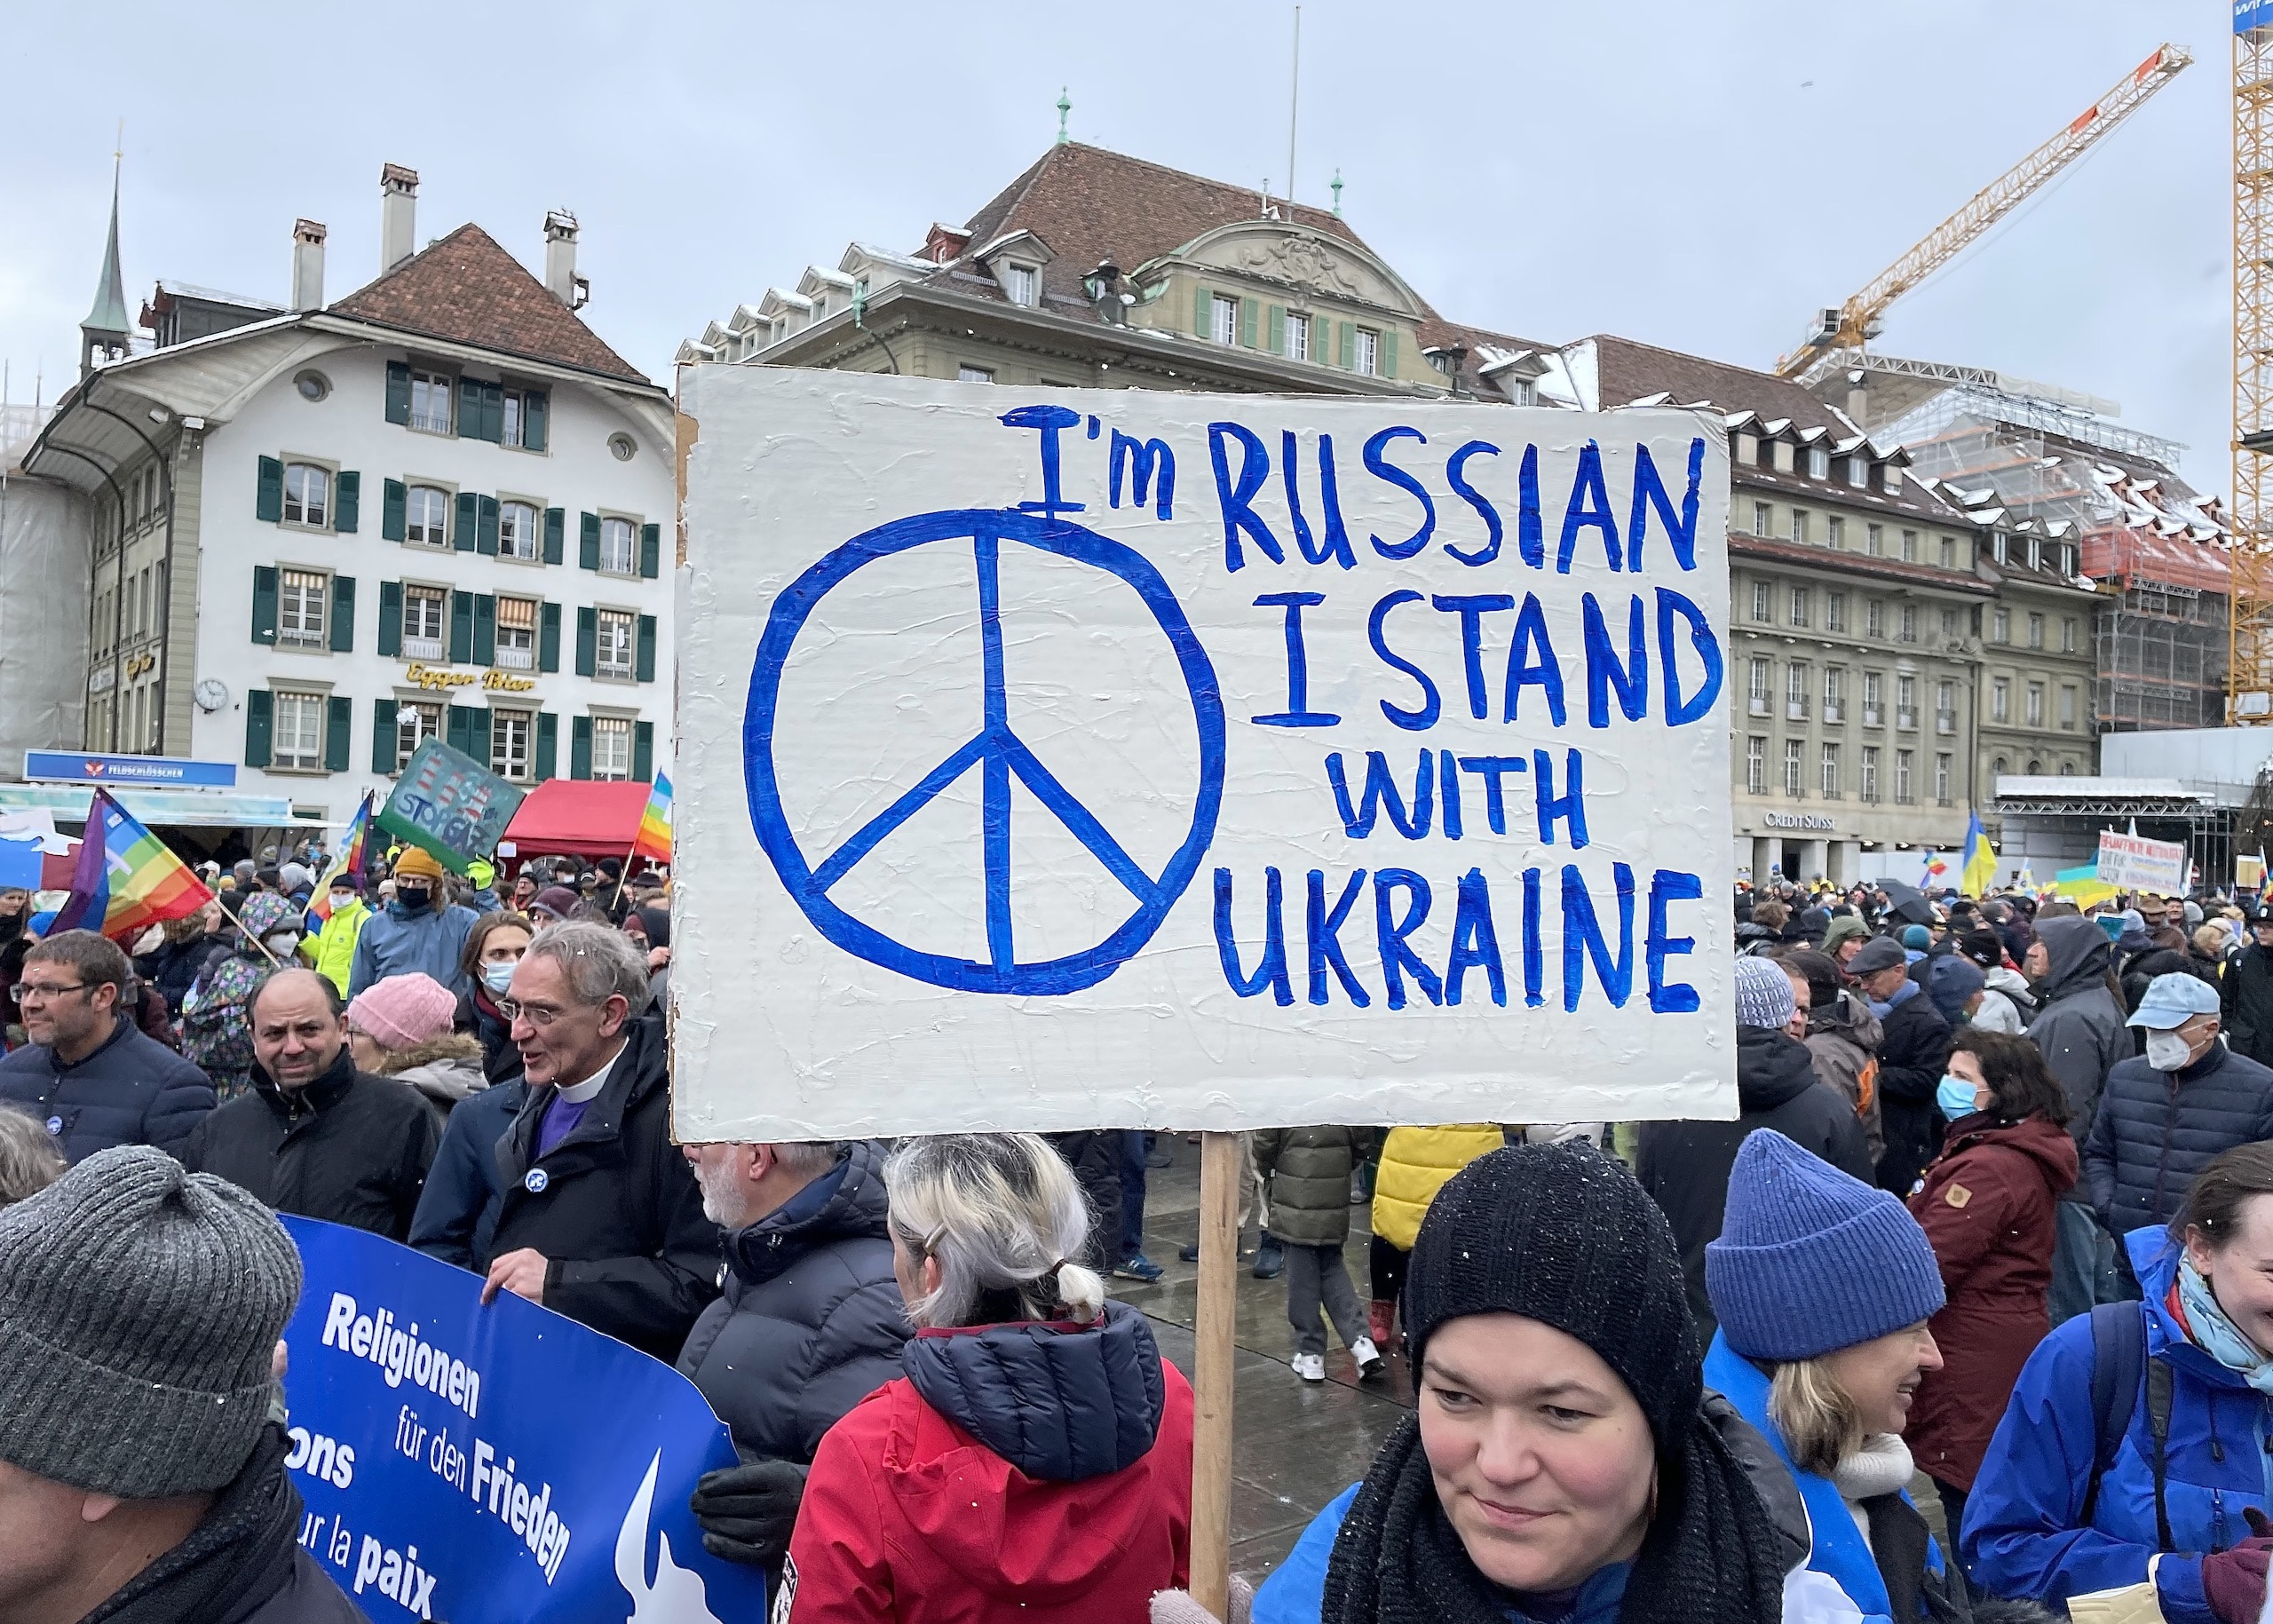 В то время как в России запрещено говорить о войне в Украине, россияне выходят на антивоенные митинги во многих странах. Берн, 2 апреля 2022 г. (© schwingen.net)